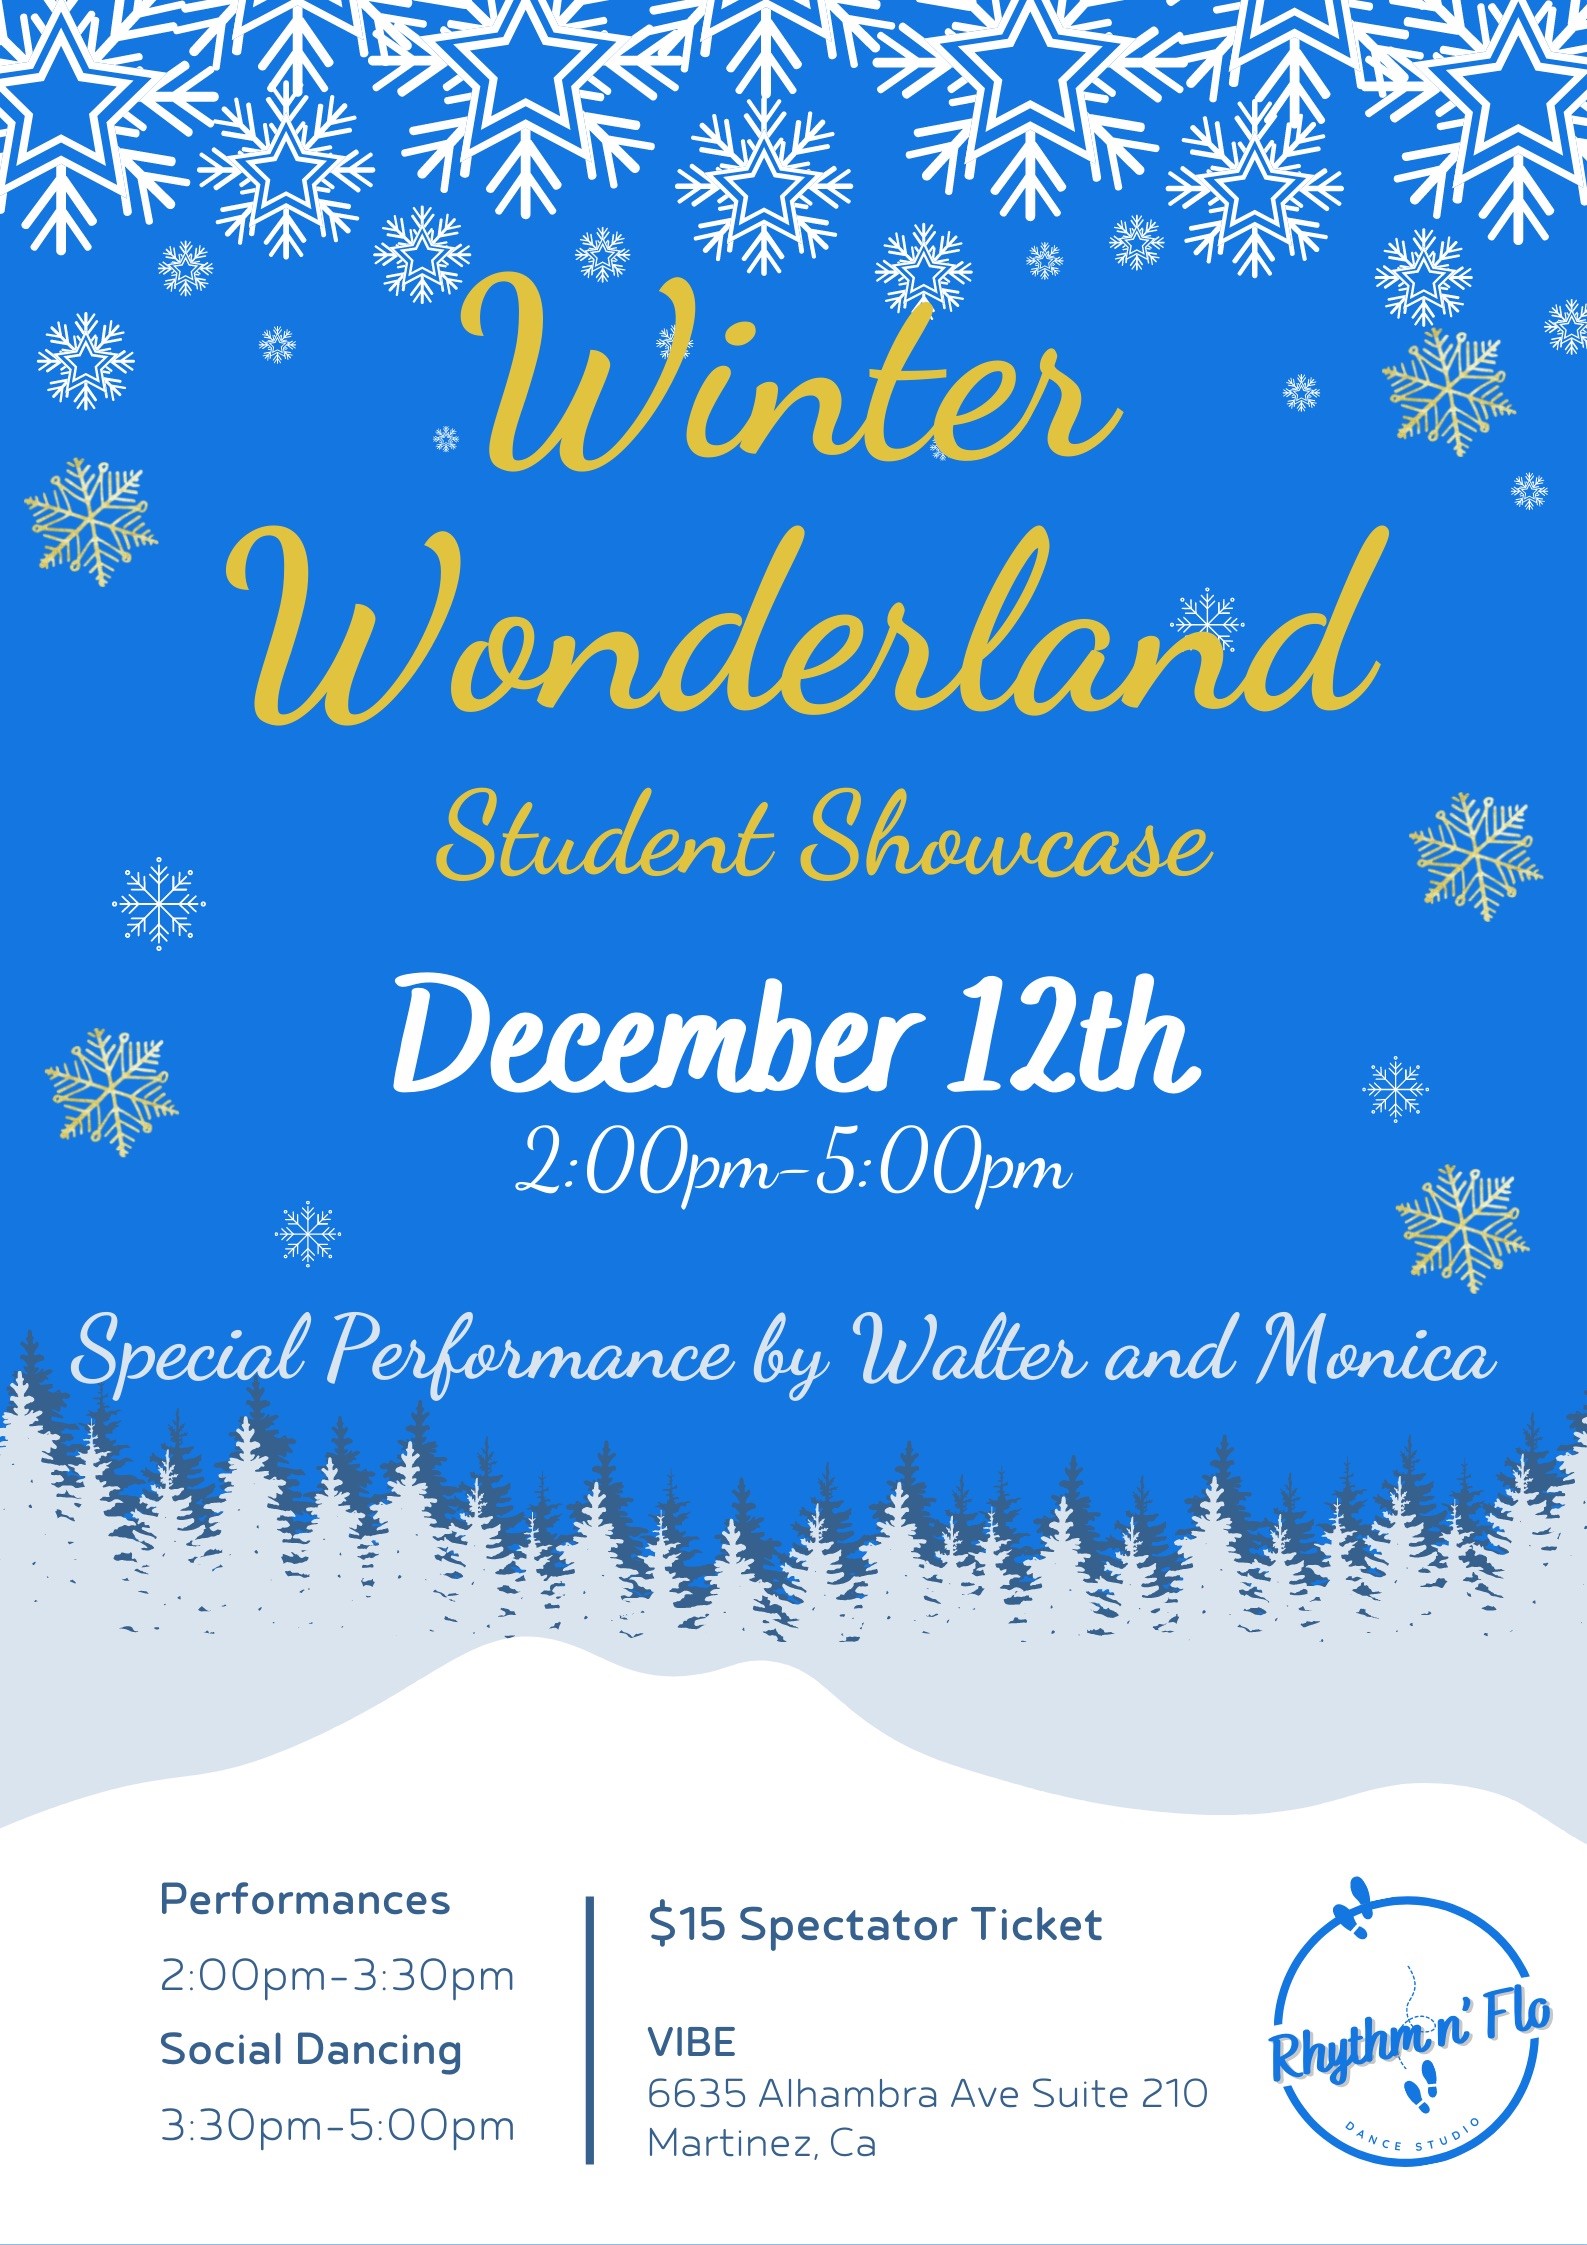 Winter Wonderland Student Showcase